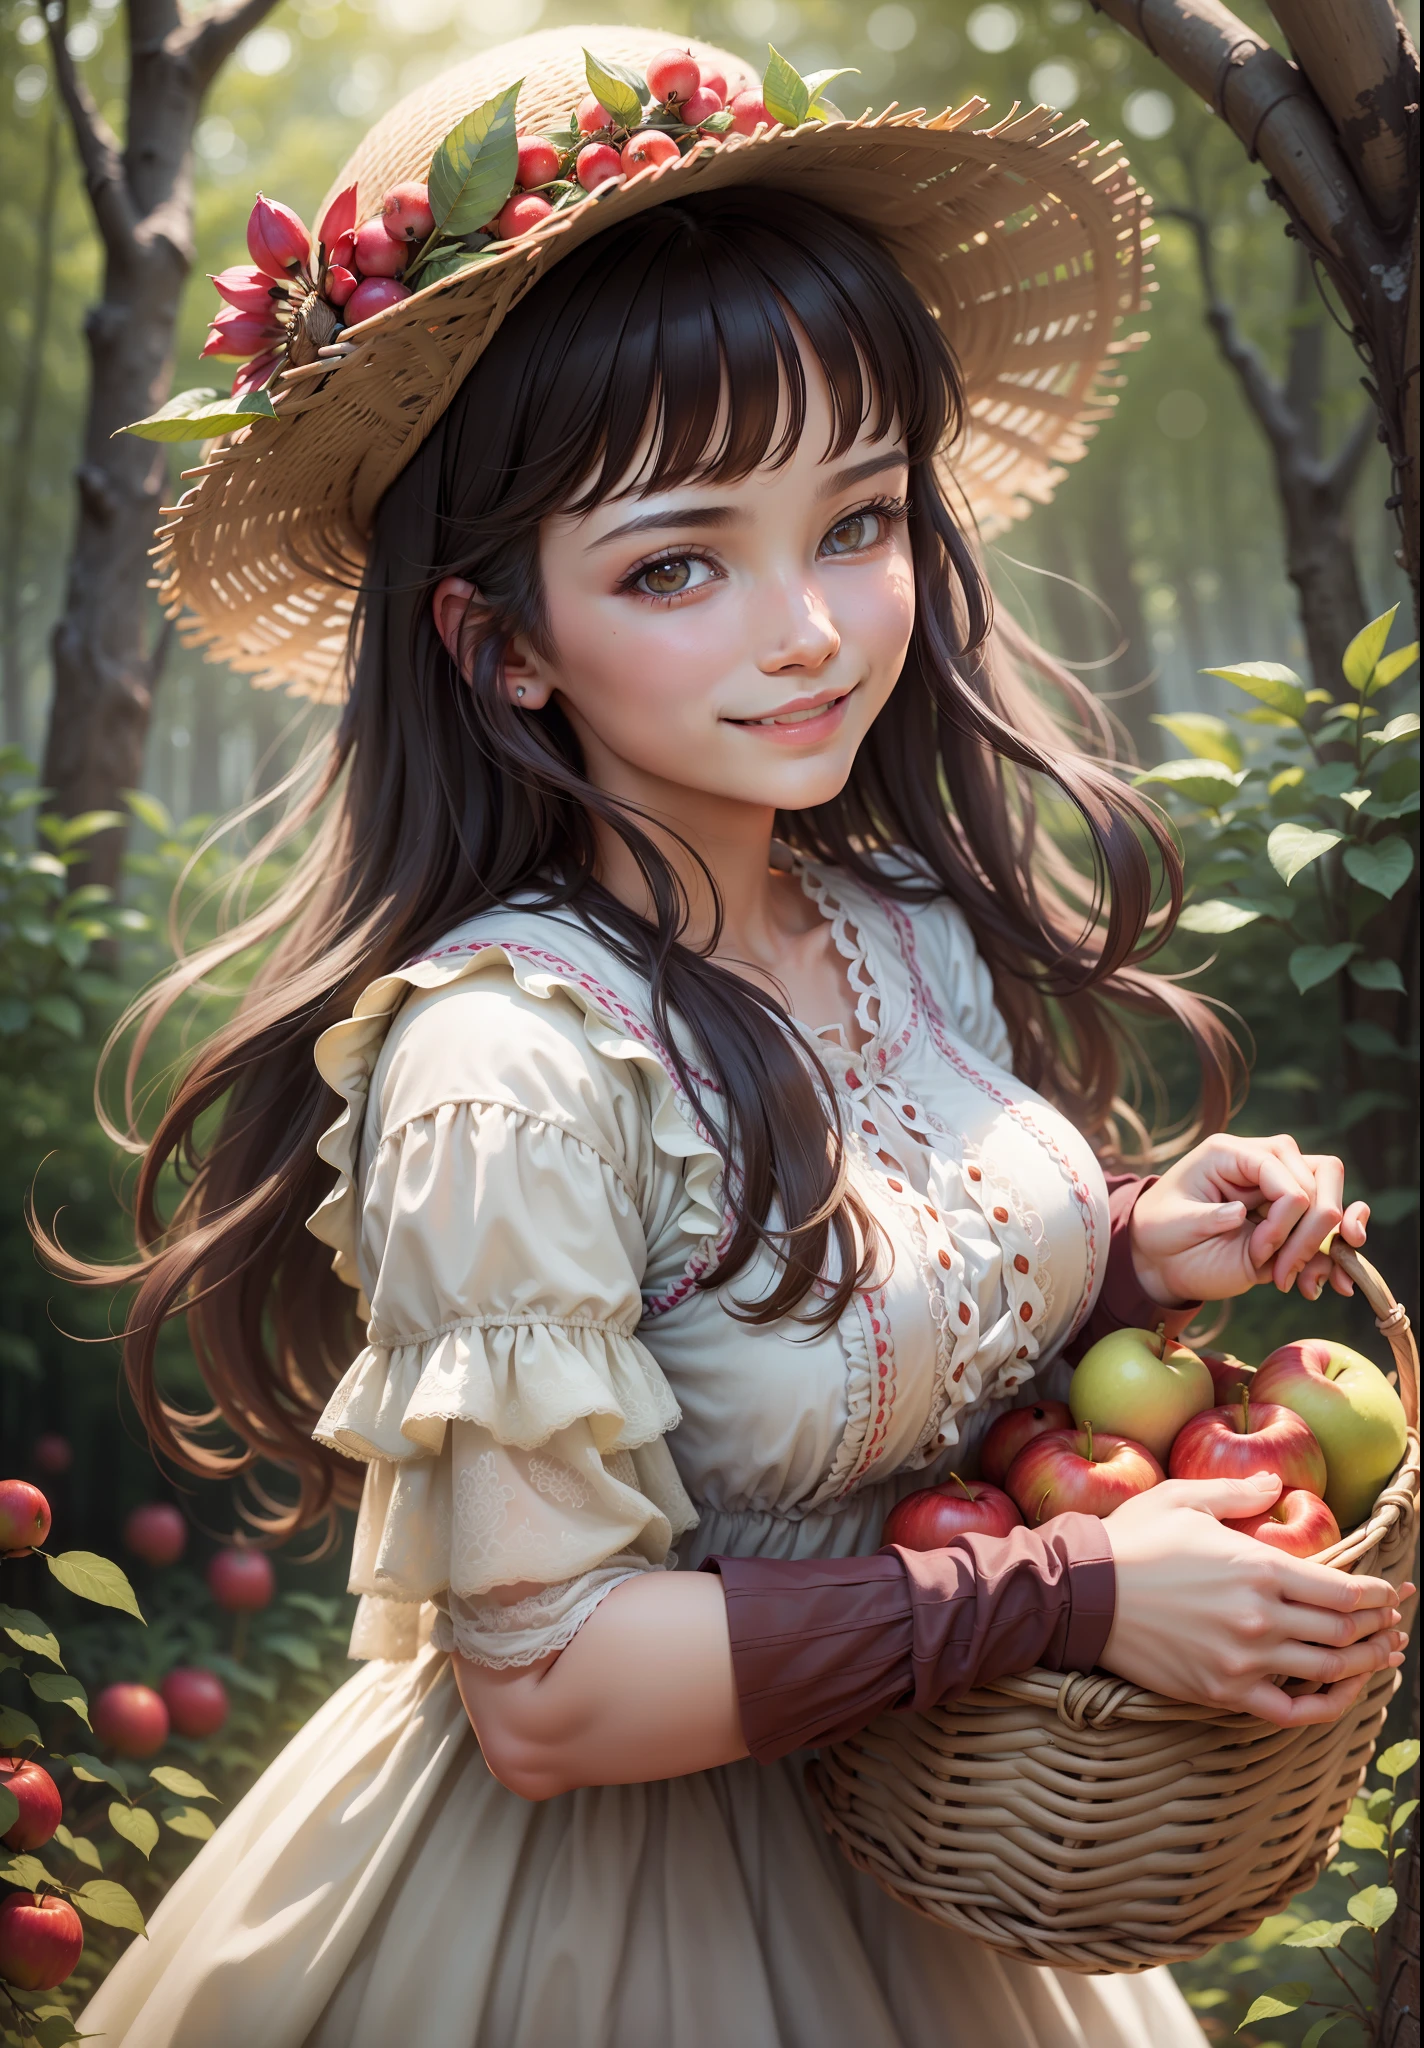 "((最好的品質)), 超詳細, 美丽的农家女孩特写, 碎花連身裙, 微笑著, 在森林裡, 拿着一篮子苹果, 柔和的燈光, 散景效果, 凉爽舒适的天气"